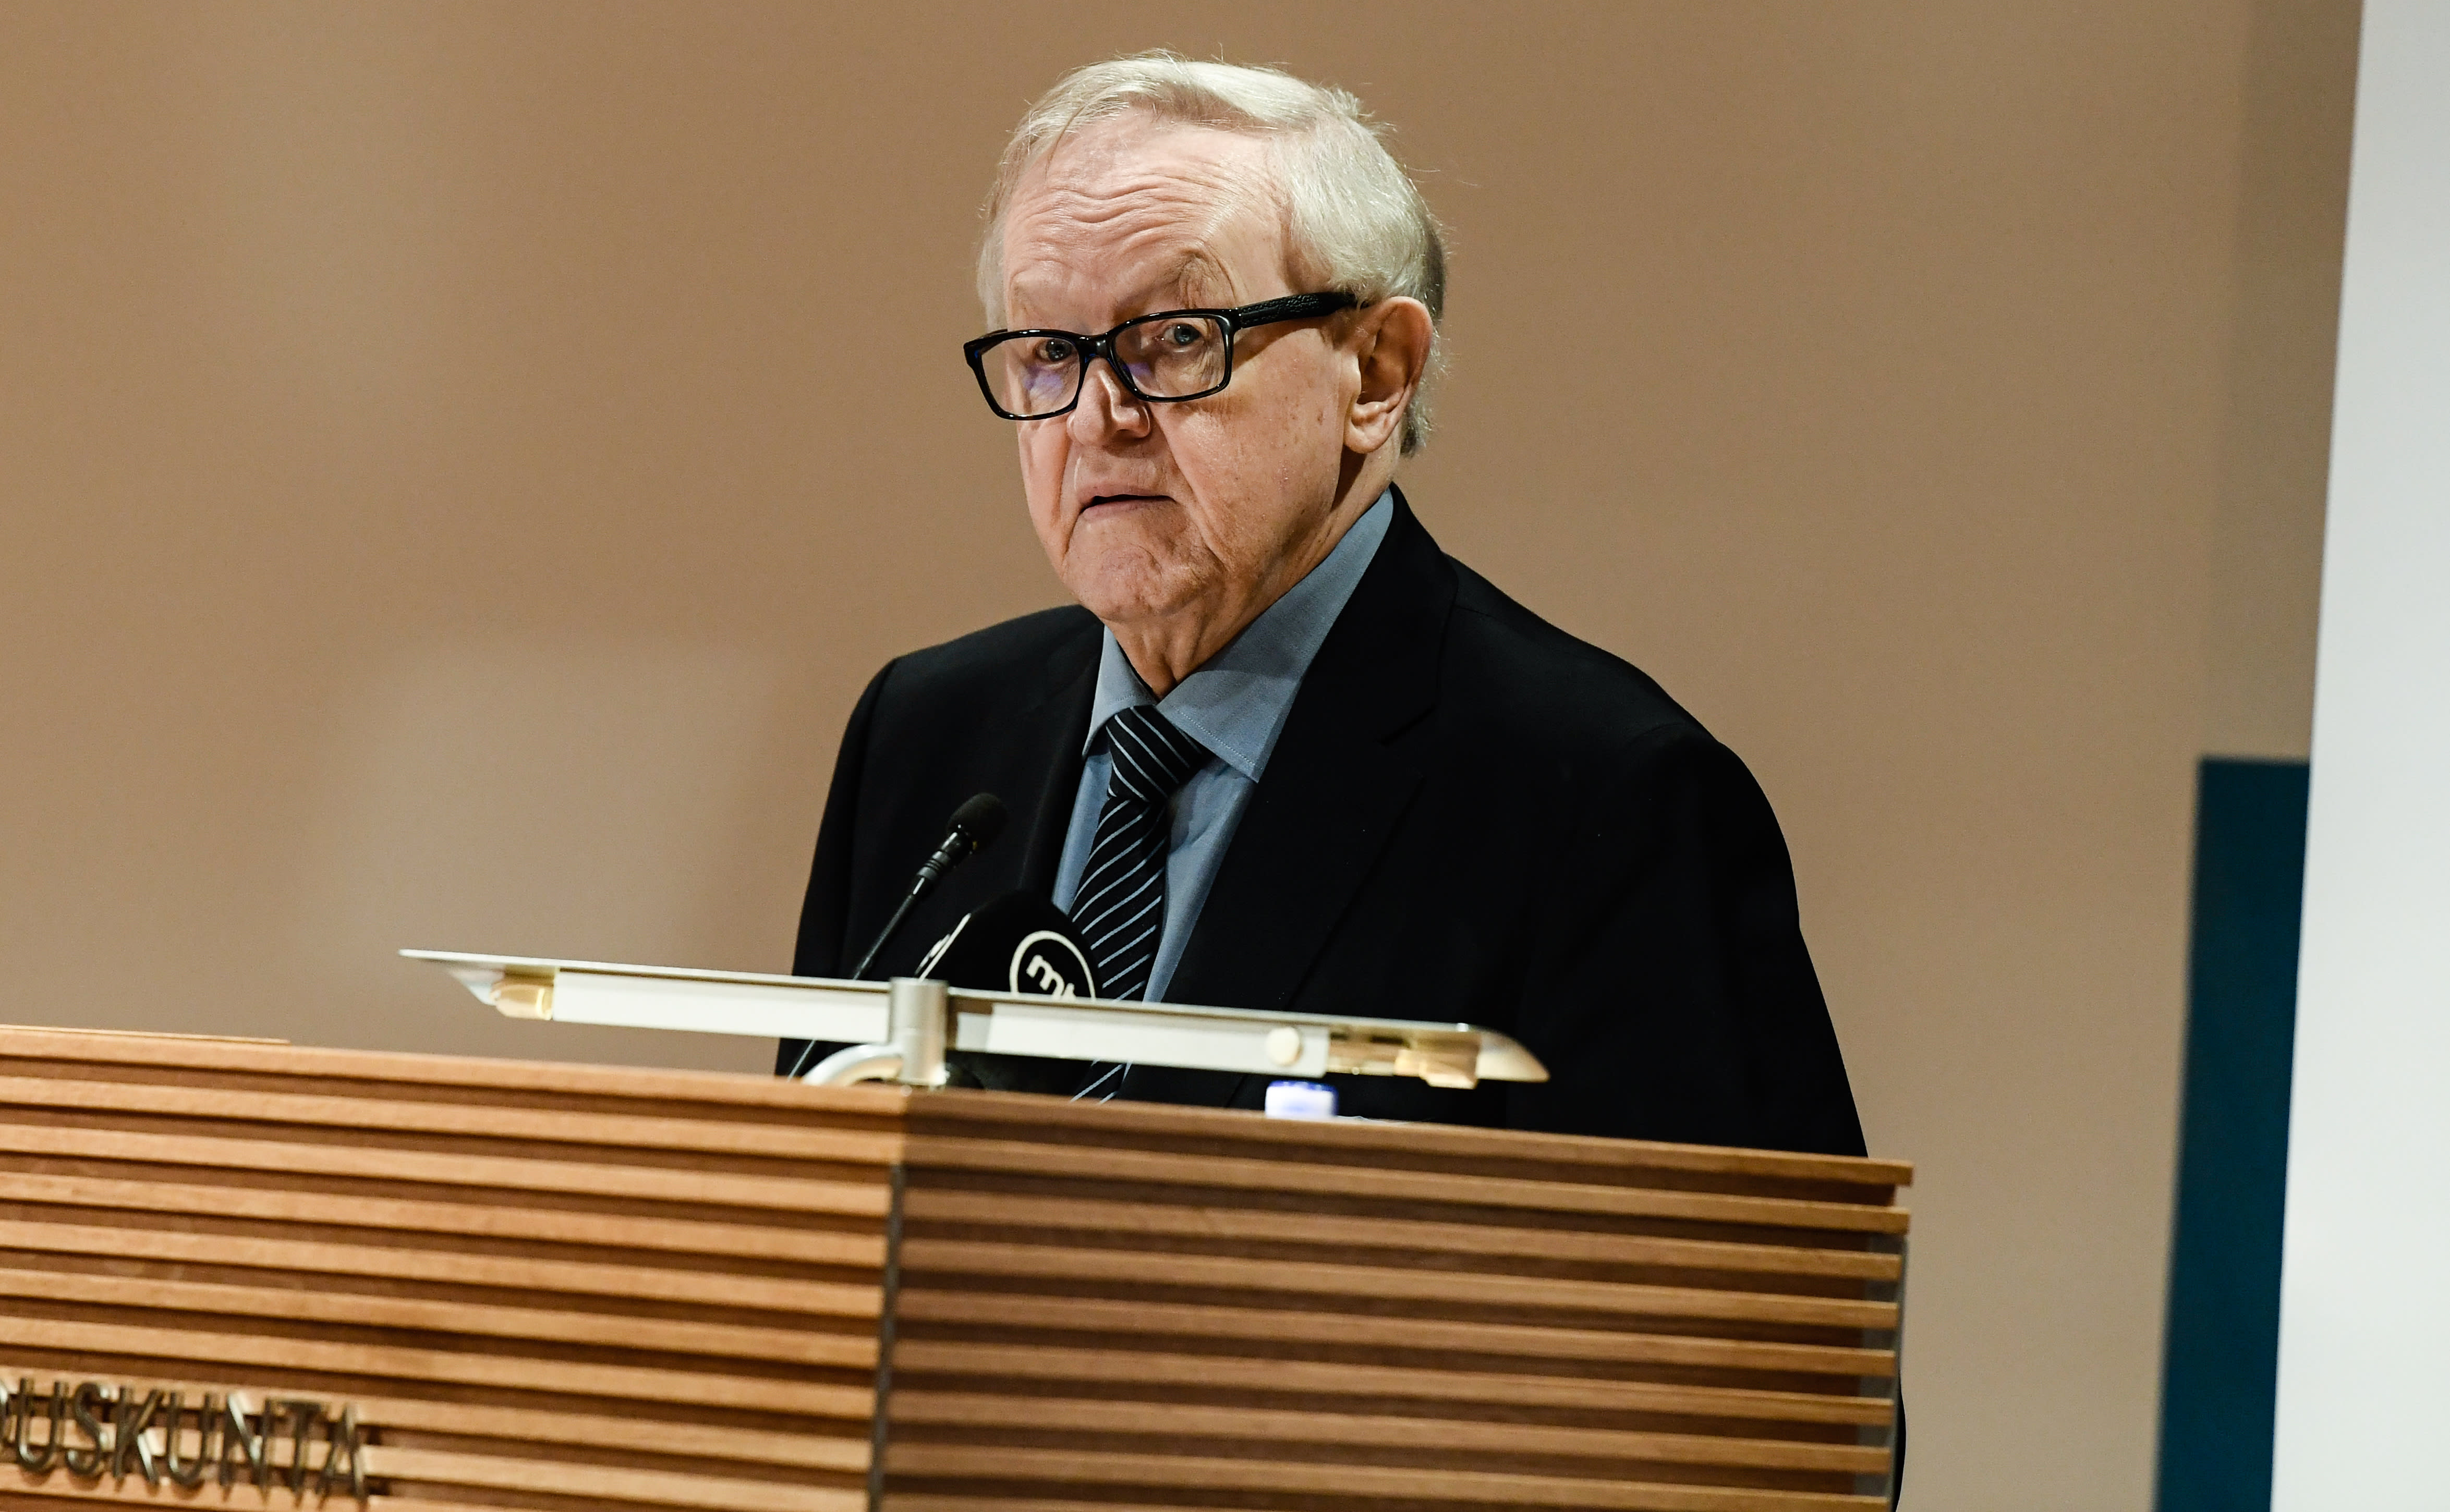 Der frühere Präsident Ahtisaari wird sich nach seiner Alzheimer-Diagnose aus dem öffentlichen Leben zurückziehen